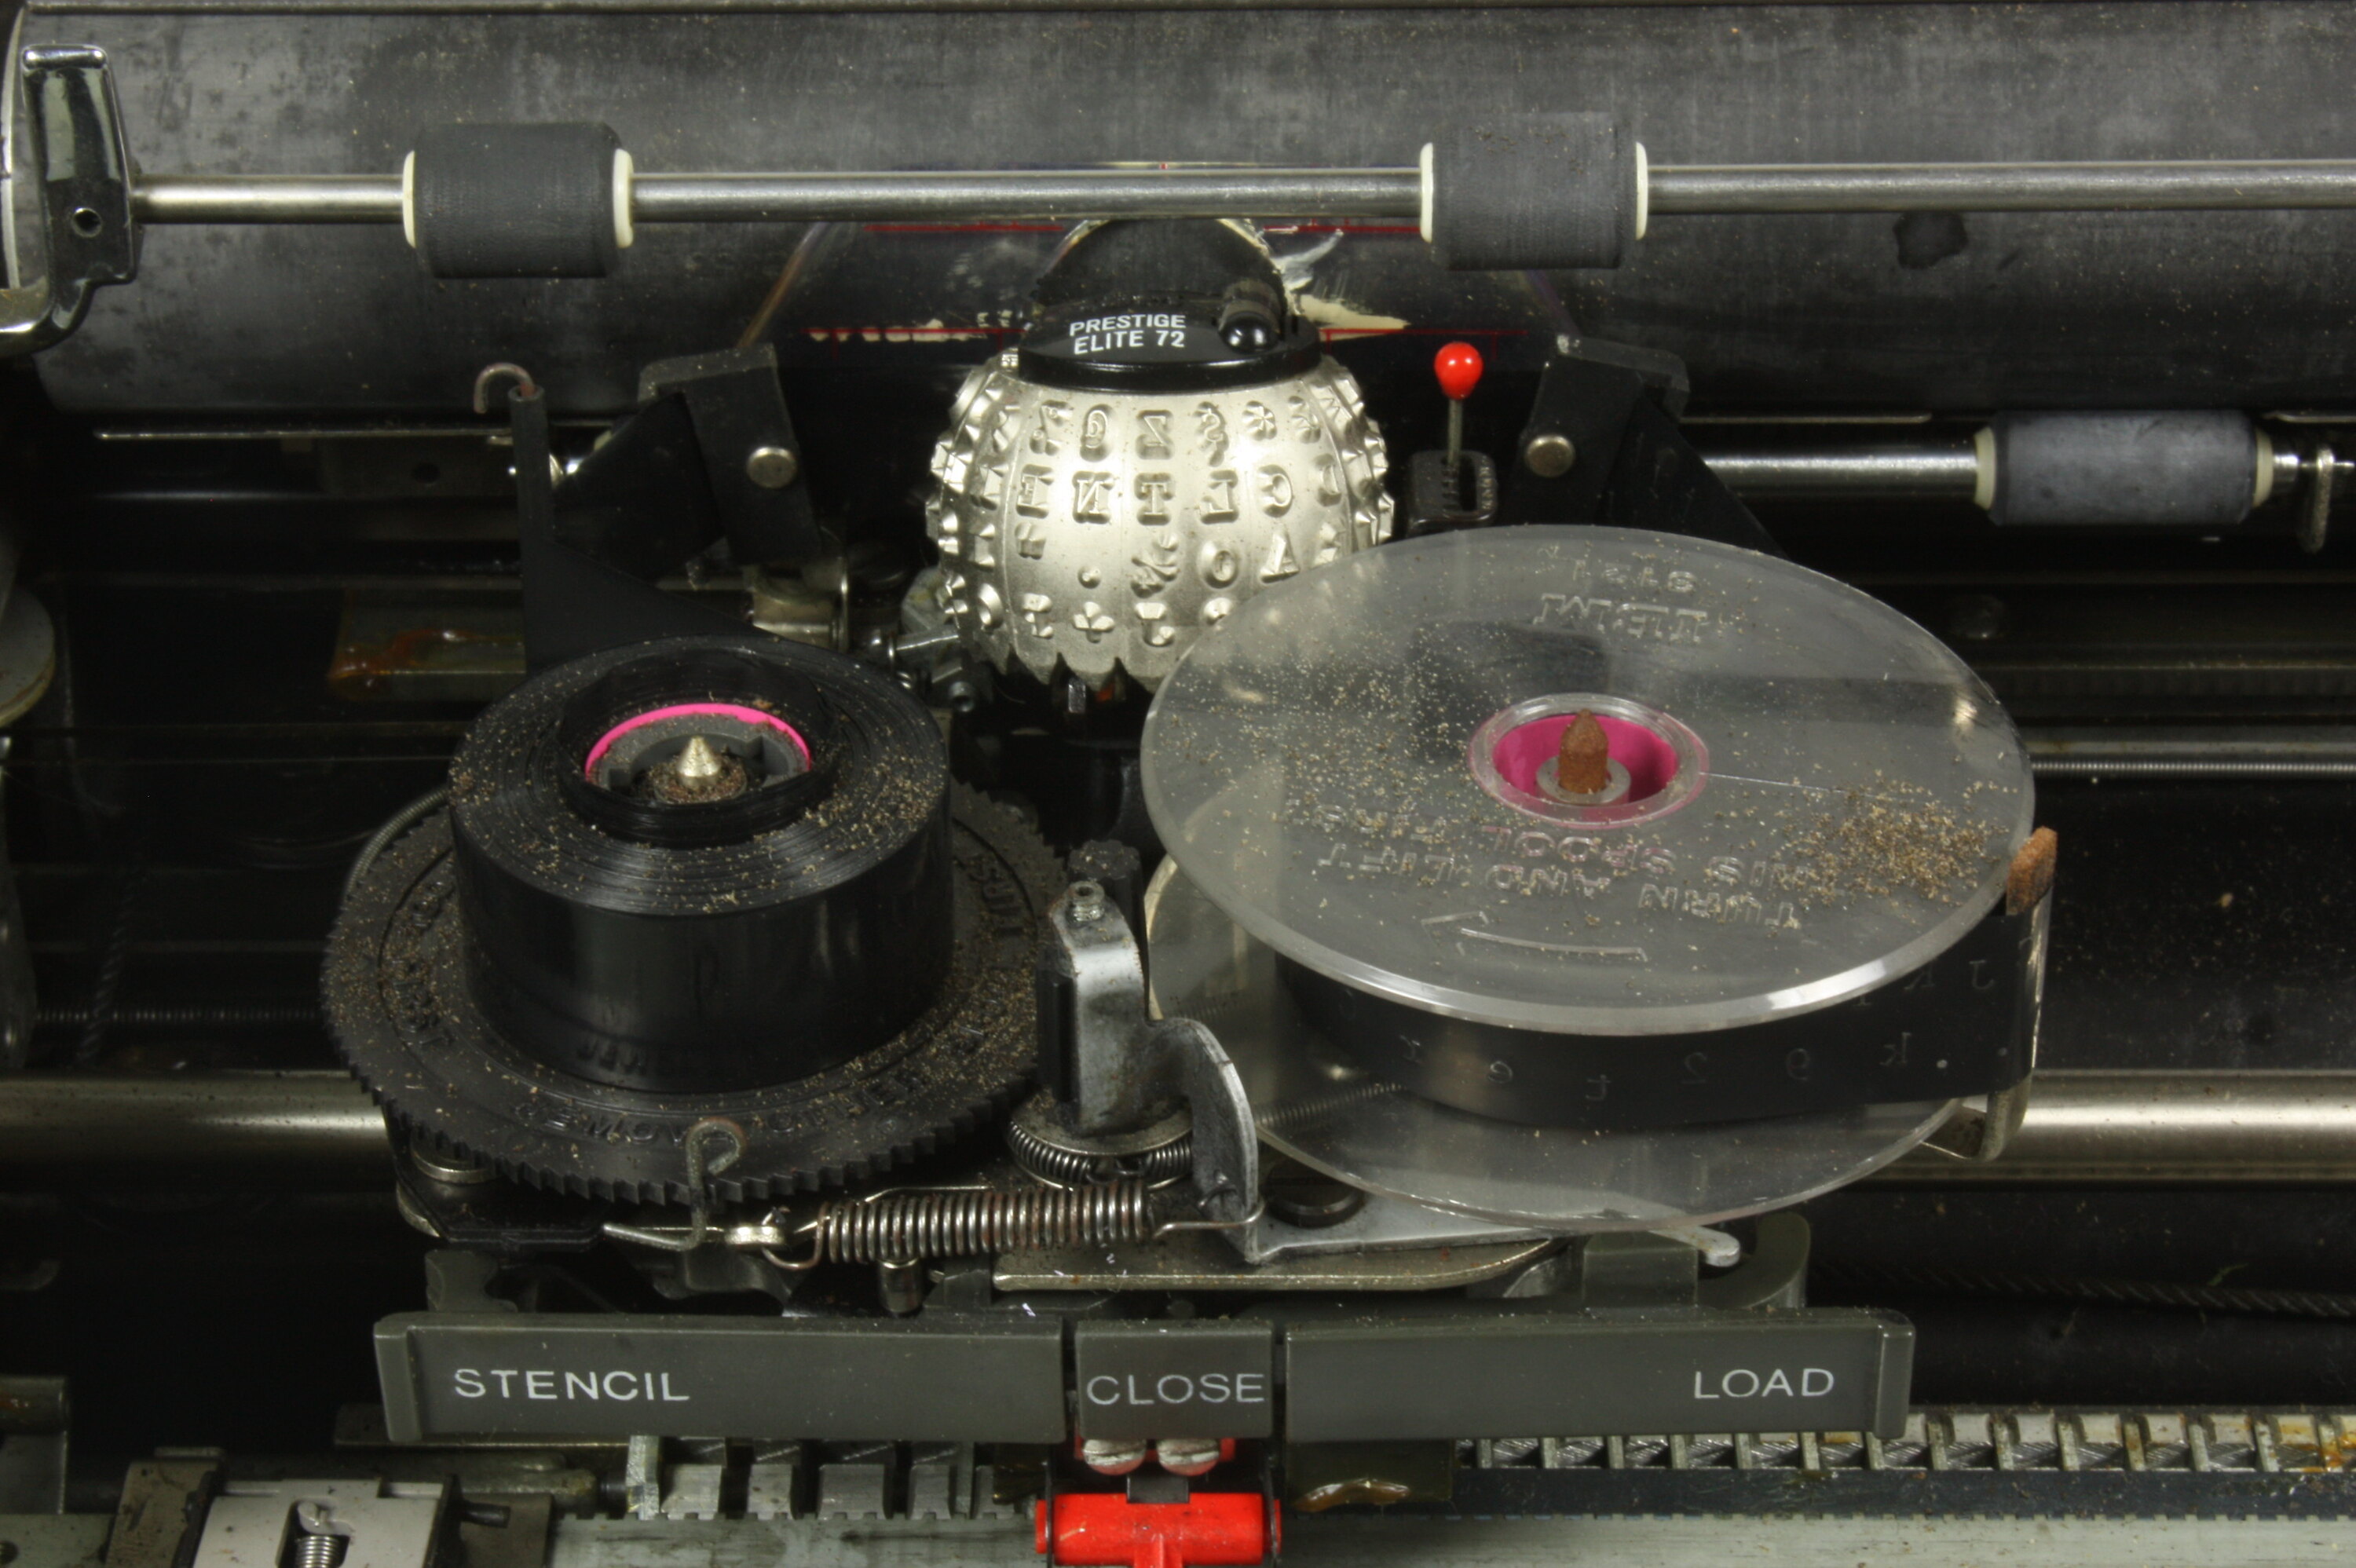 Typewriter - IBM Corporation, Selectric 1 Model 71, circa 1967